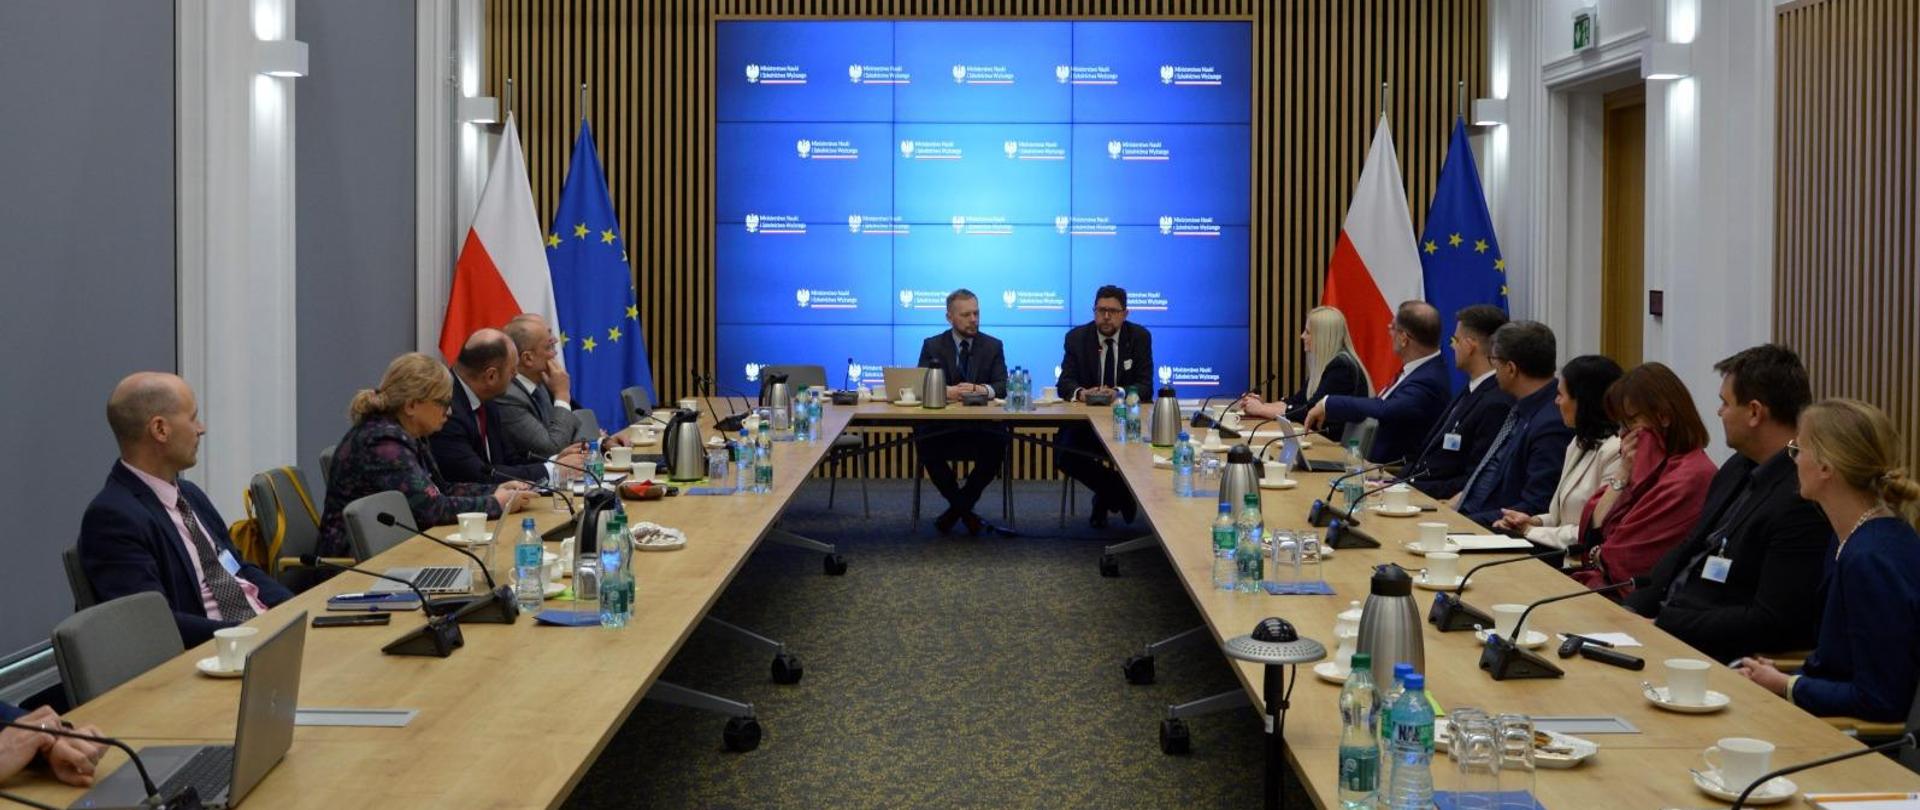 Zdjęcie od tyłu sali, za ustawionymi w czworokąt stołami siedzi dużo ludzi, u szczytu stołu wiceminister Szeptycki, za nim na ścianie wielki ekran, po obu jego stronach flagi Polski i UE.